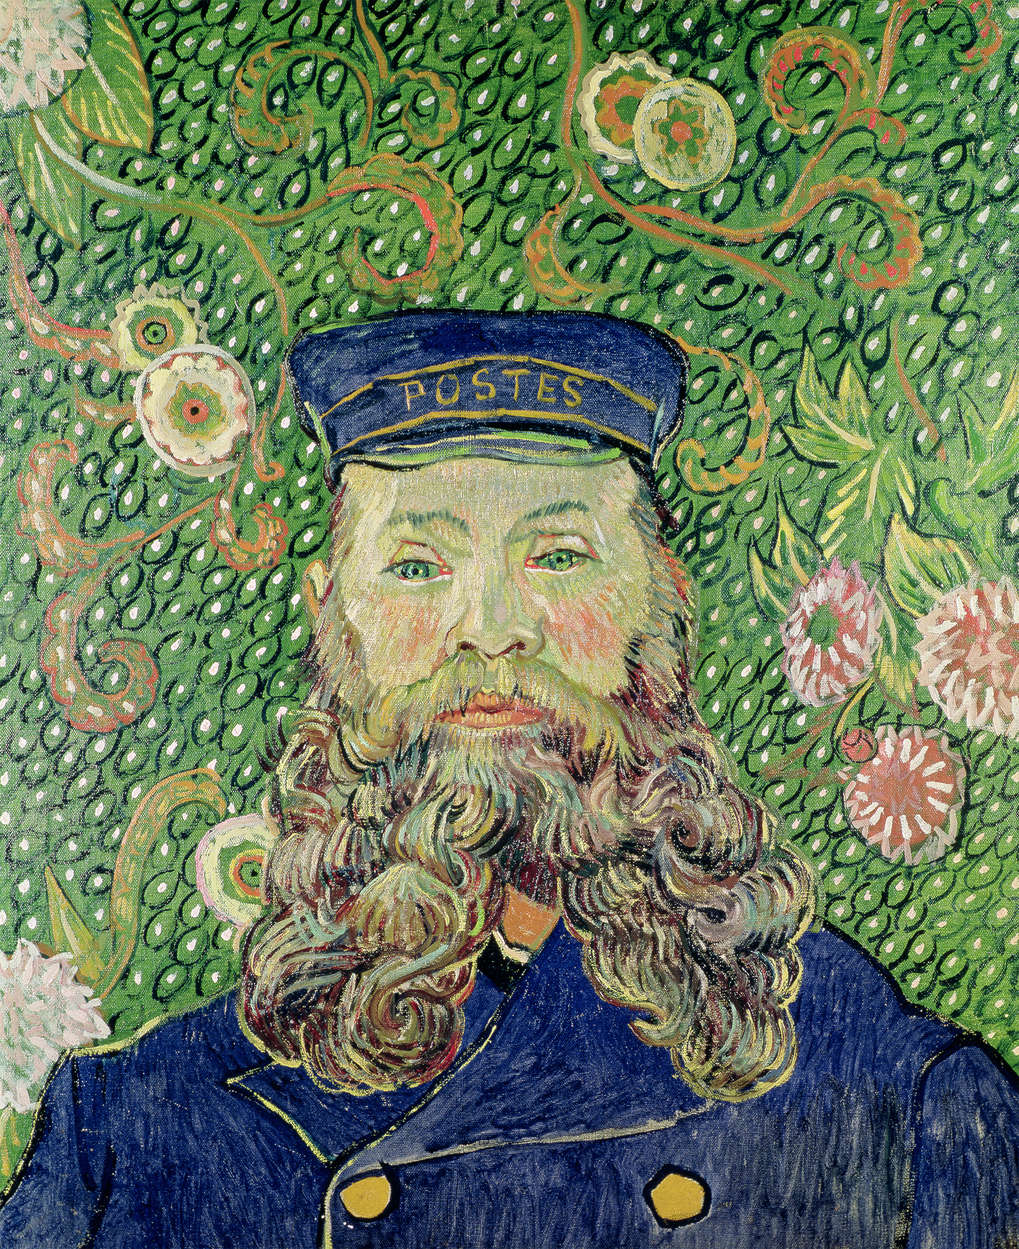             Ritratto del postino Joseph Roulin" murale di Vincent van Gogh
        